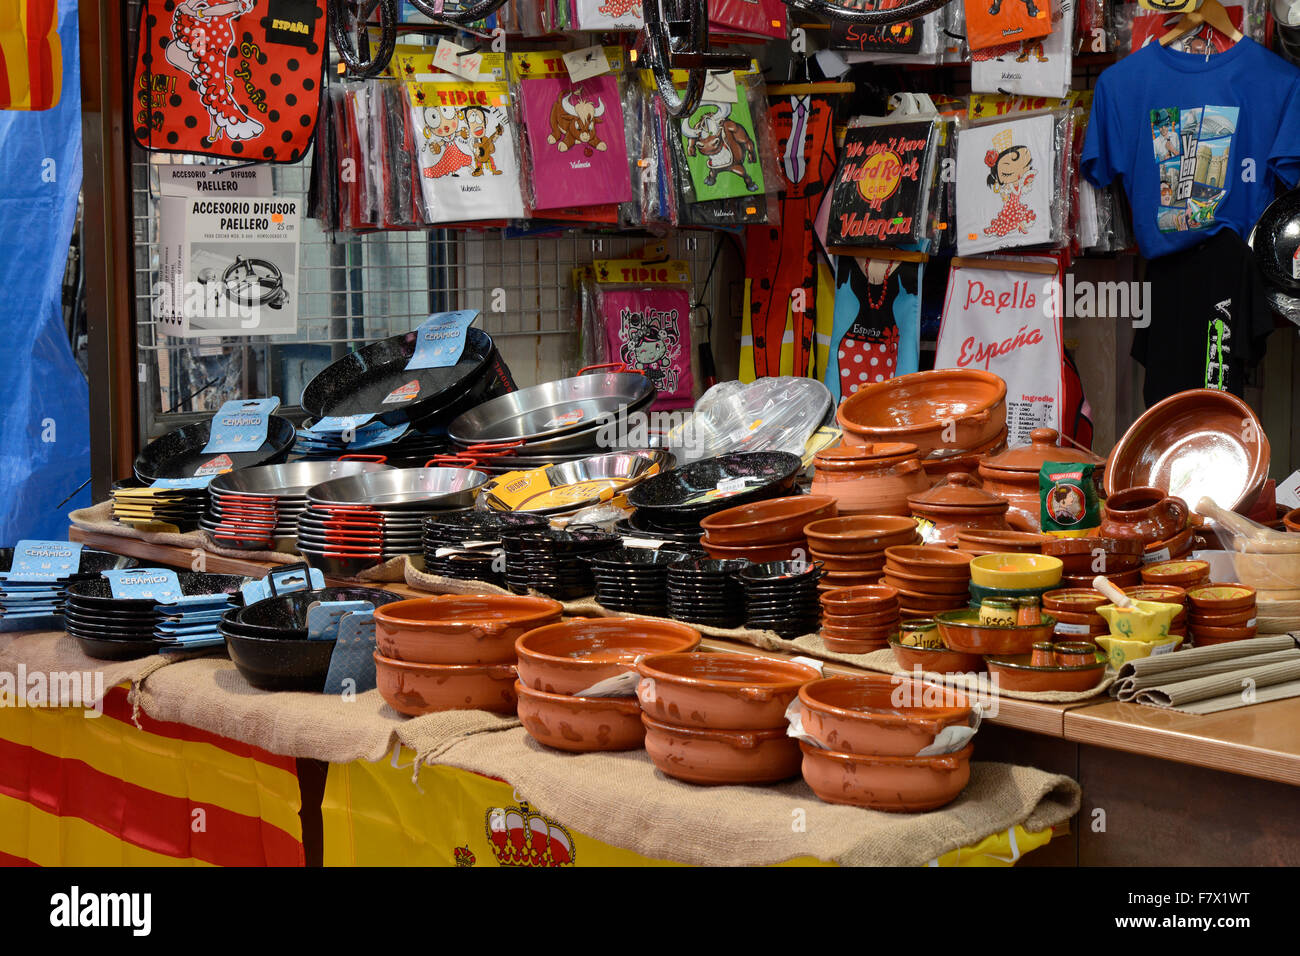 Visualizzazione di utensili da cucina, pentole e padelle e abbigliamento presso il mercato coperto di Valencia, Spagna Foto Stock